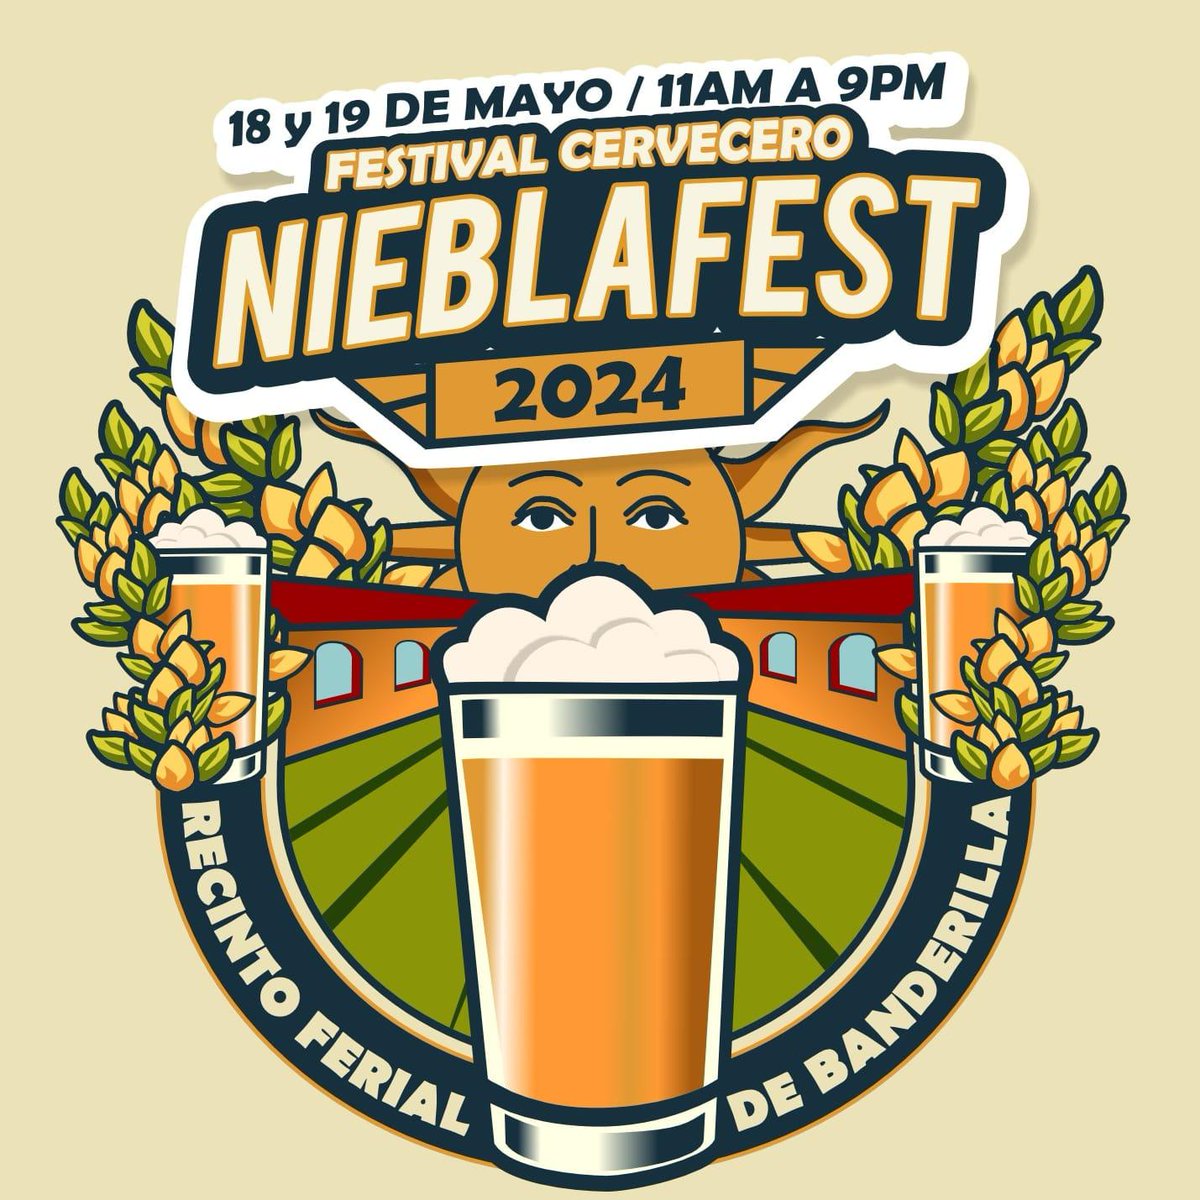 🍻¡No te pierdas el Nieblafest 2024!  El festival cervecero en Banderilla. Más de 30 expositores, música en vivo, comida y diversión garantizada.

¡Adquiere tus boletos ya! 

nbcdiario.com.mx/nieblafest-202…

#Xalapa #Banderilla #Nieblafest2024 #CervezaArtesanal #Veracruz